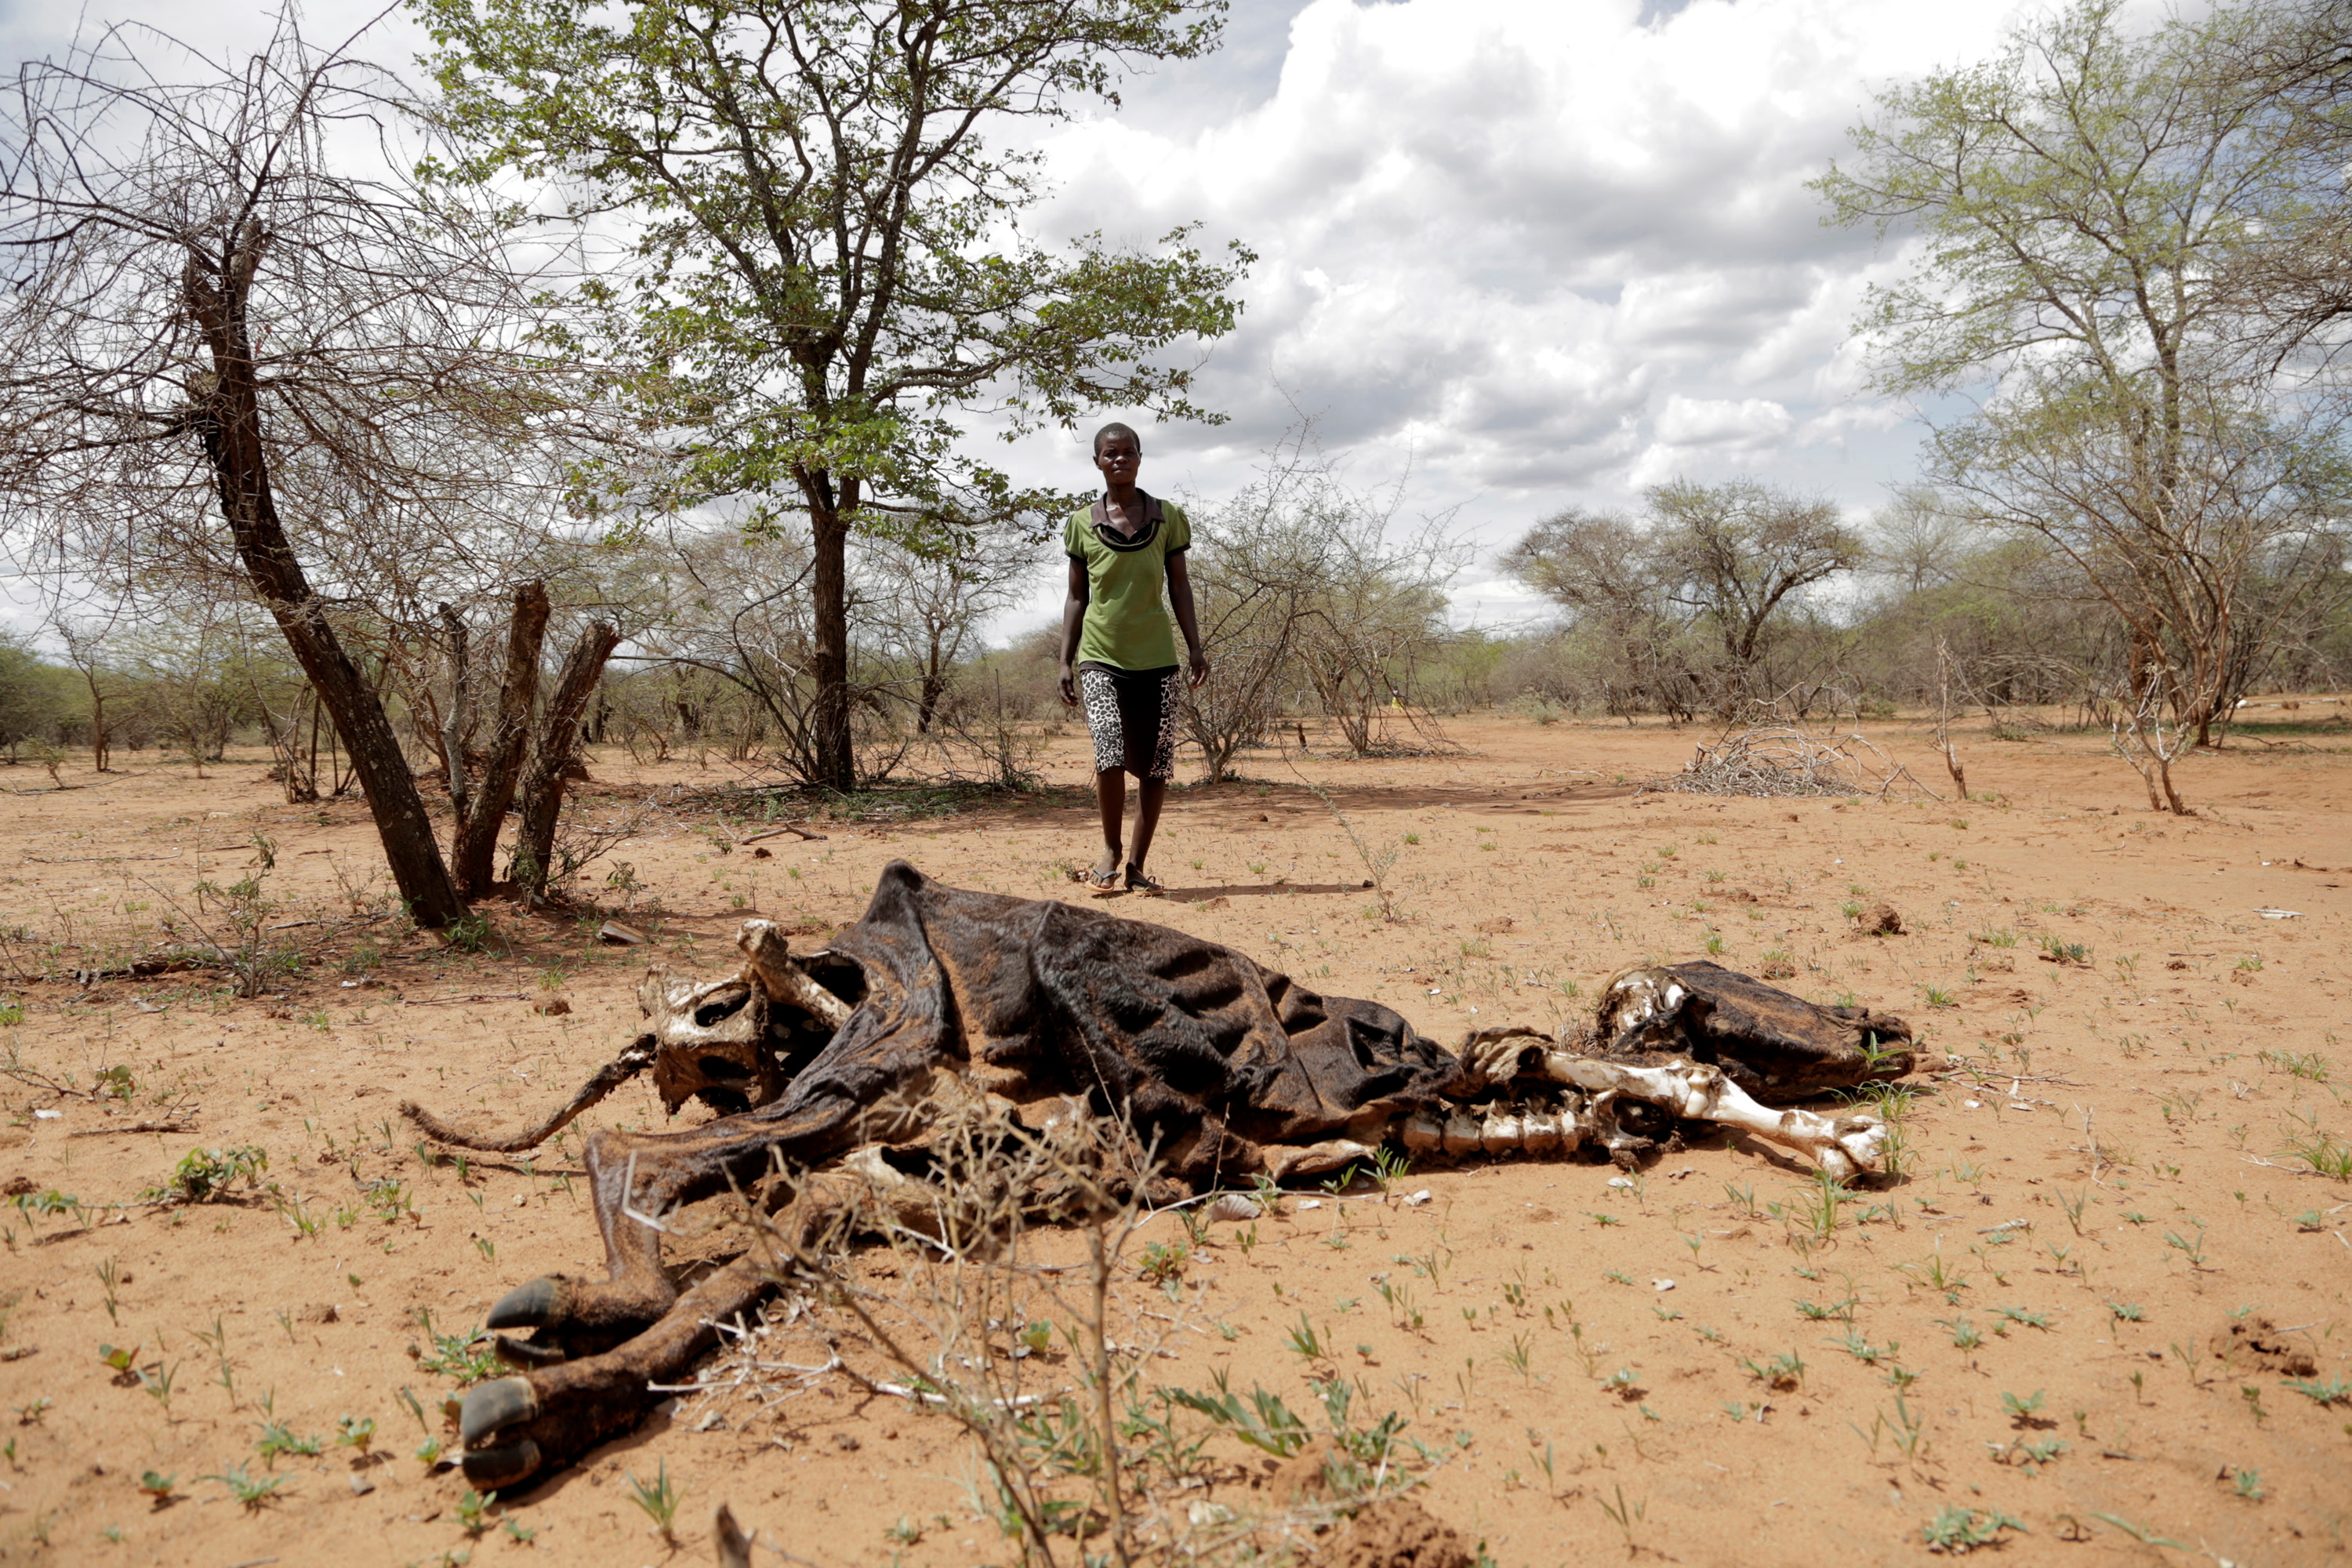 La sequía severa afecta a África más que a cualquier otro continente
EFE/ Aaron Ufumeli
